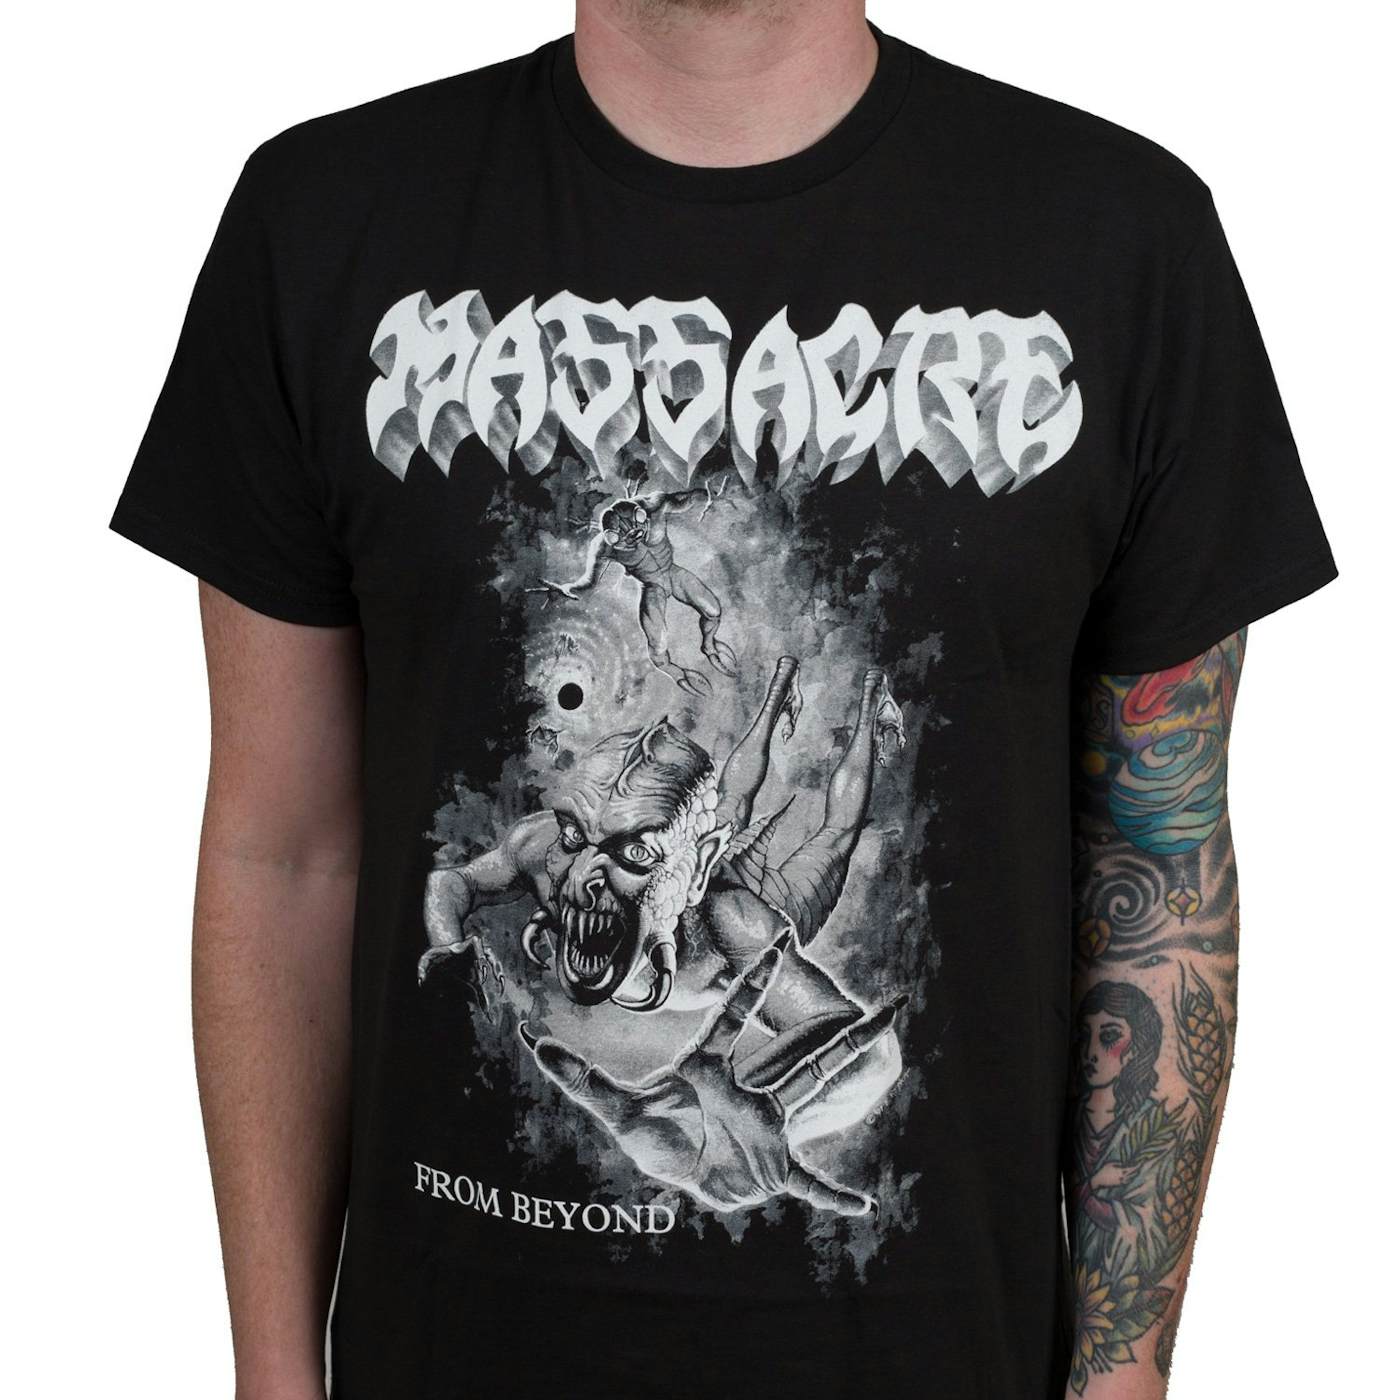 Massacre "From Beyond" T-Shirt